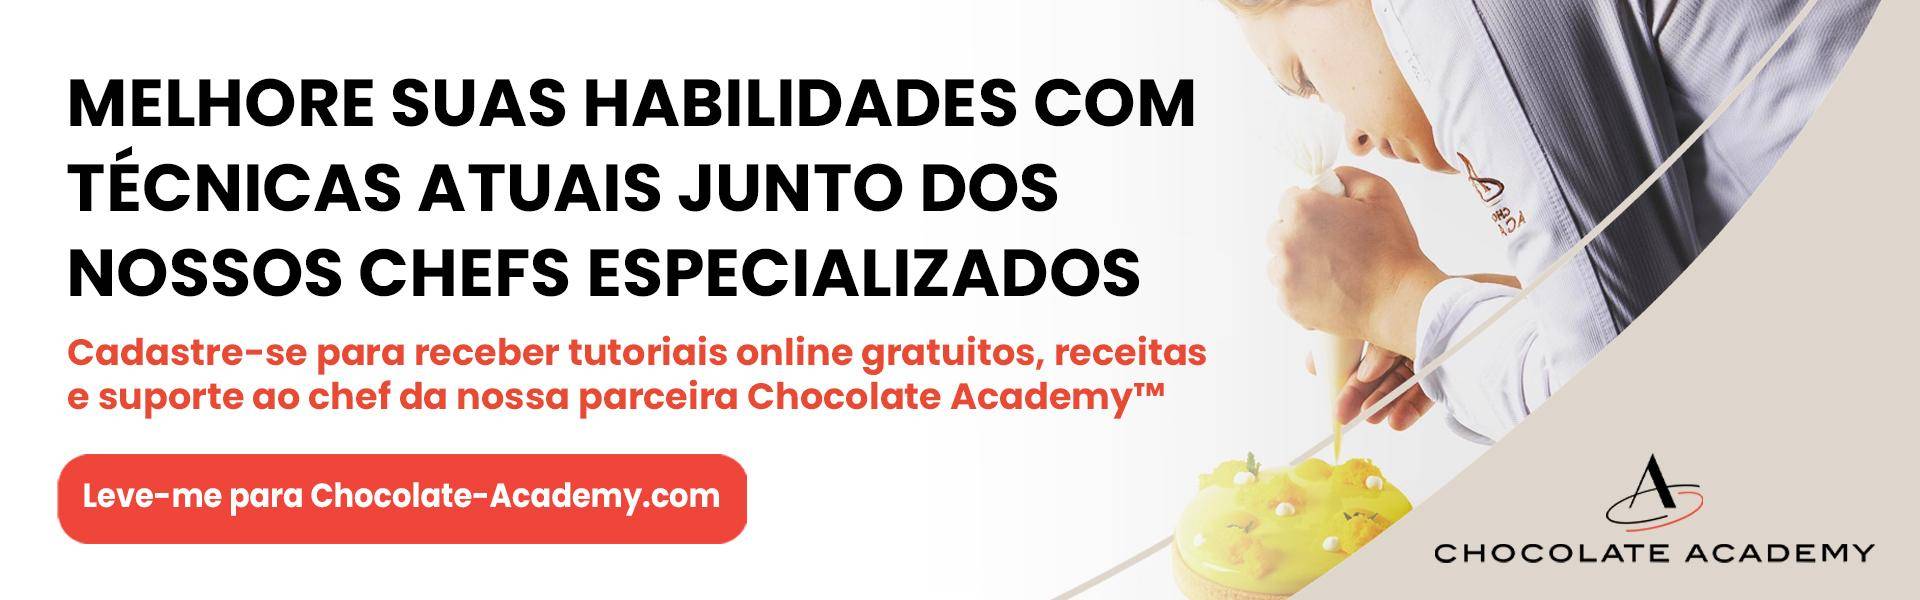 Leve-me para Chocolate-Academy.com